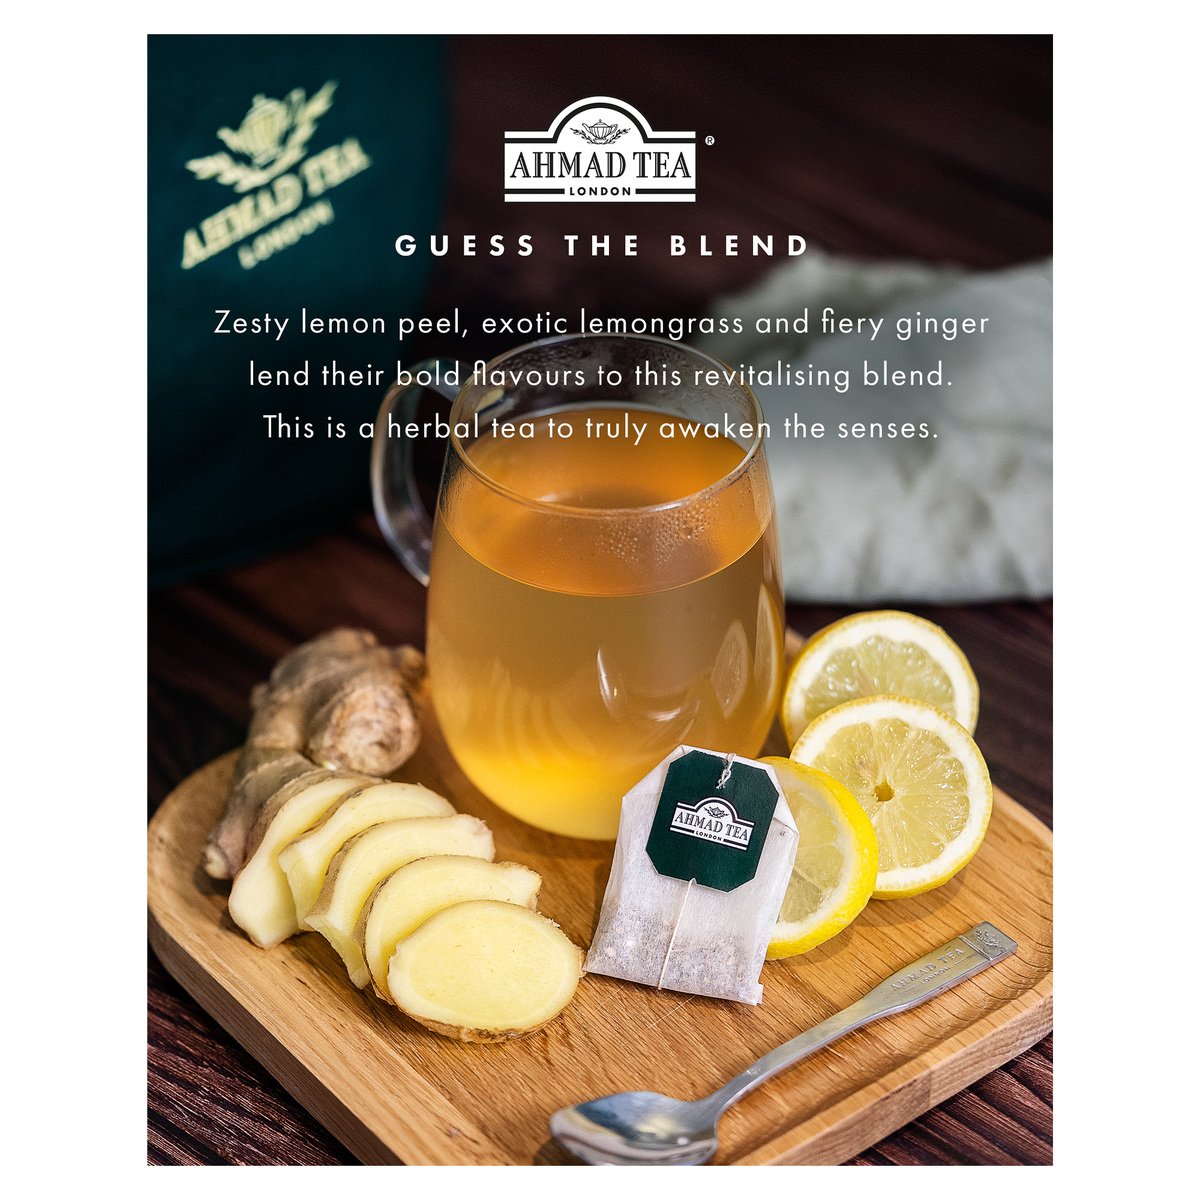 Ahmad Tea Lemon & Ginger Tea 20 Teabags